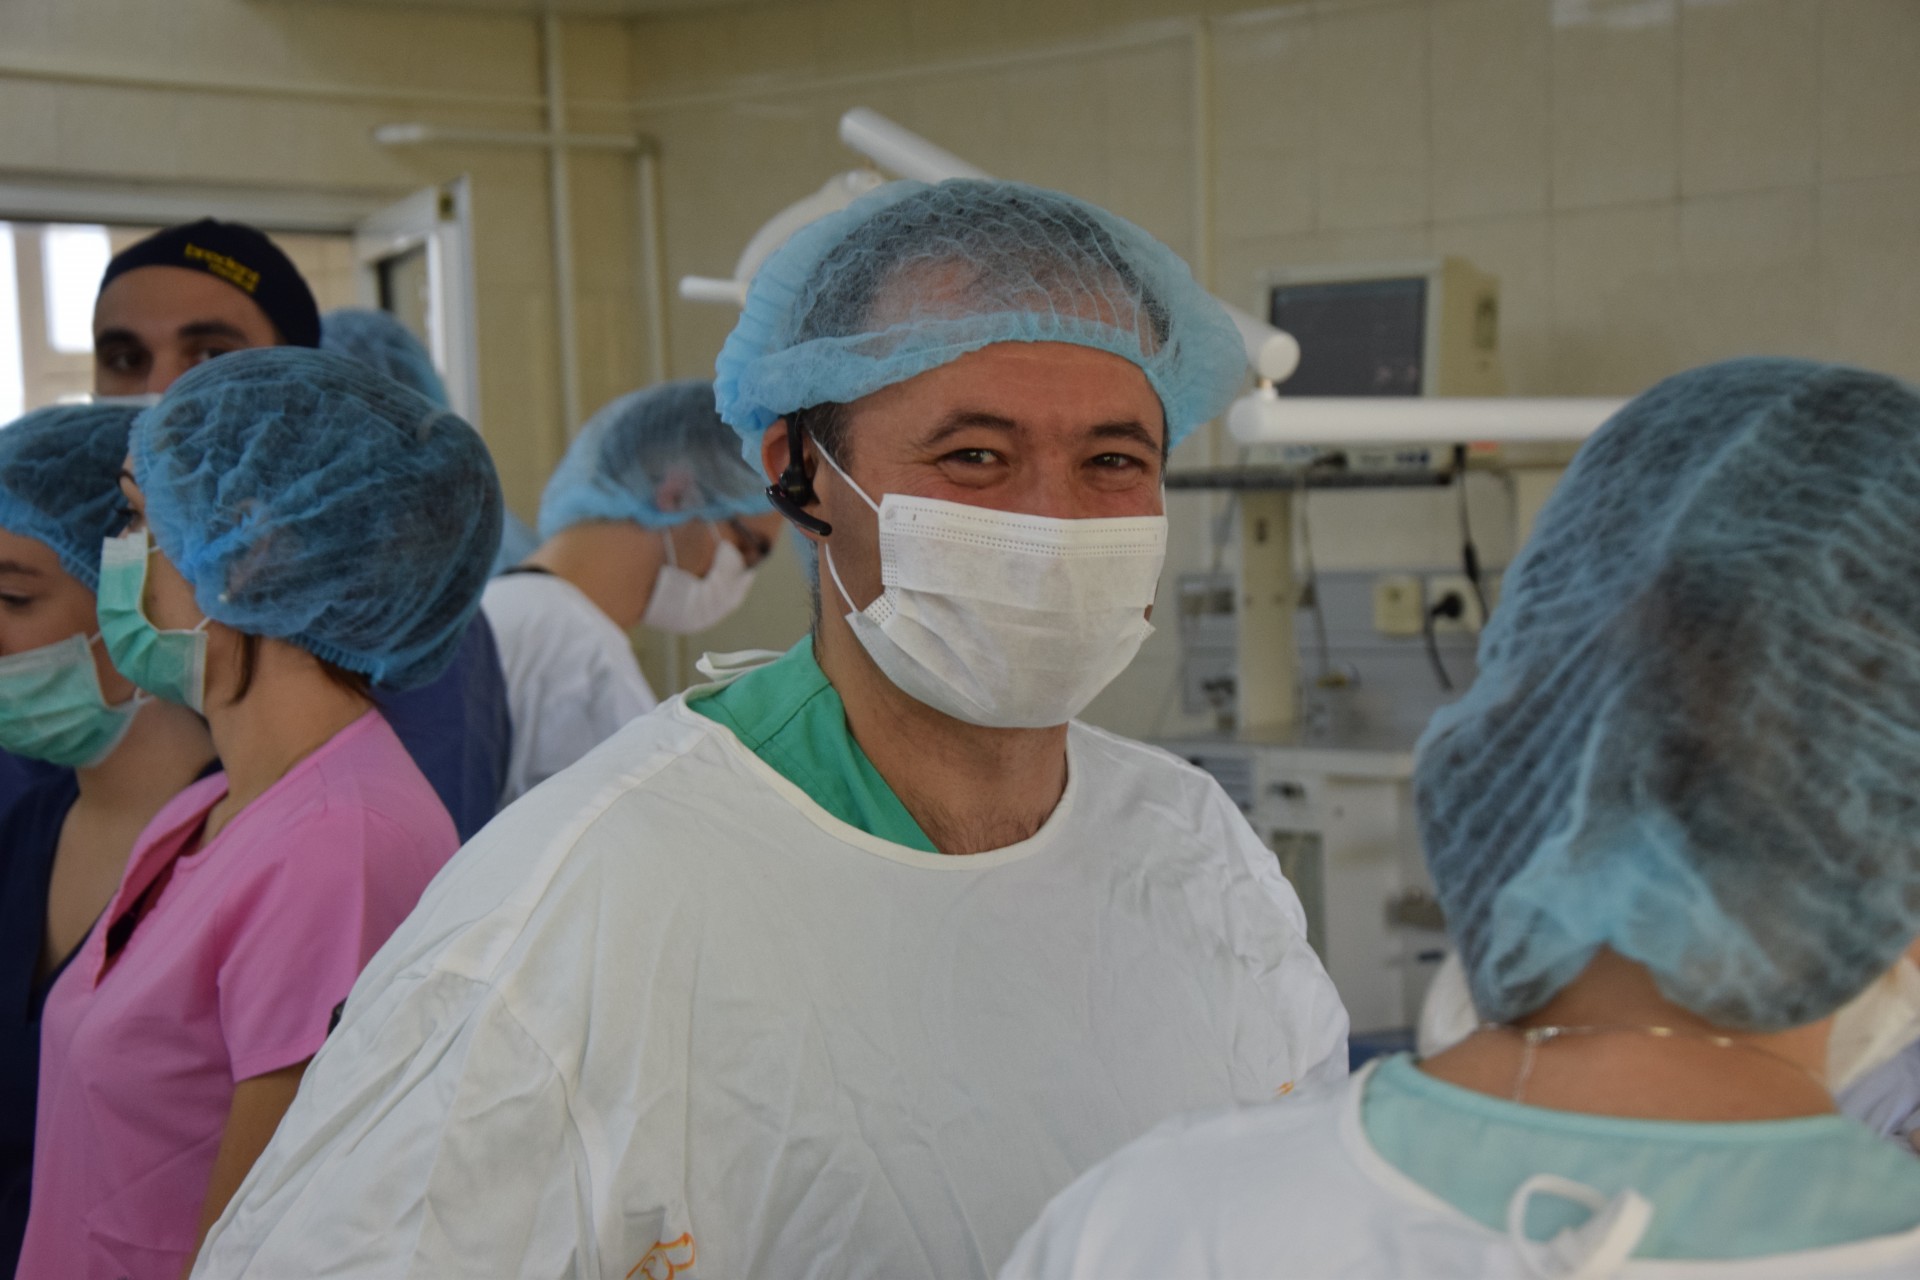 Tumoare la mandibulă, un caz excepțional, tratat cu succes de echipa de la Catedra de chirurgie OMF și implantologie orală ”Arsenie Guțan” și Clinica stomatologică ”Omni Dent”